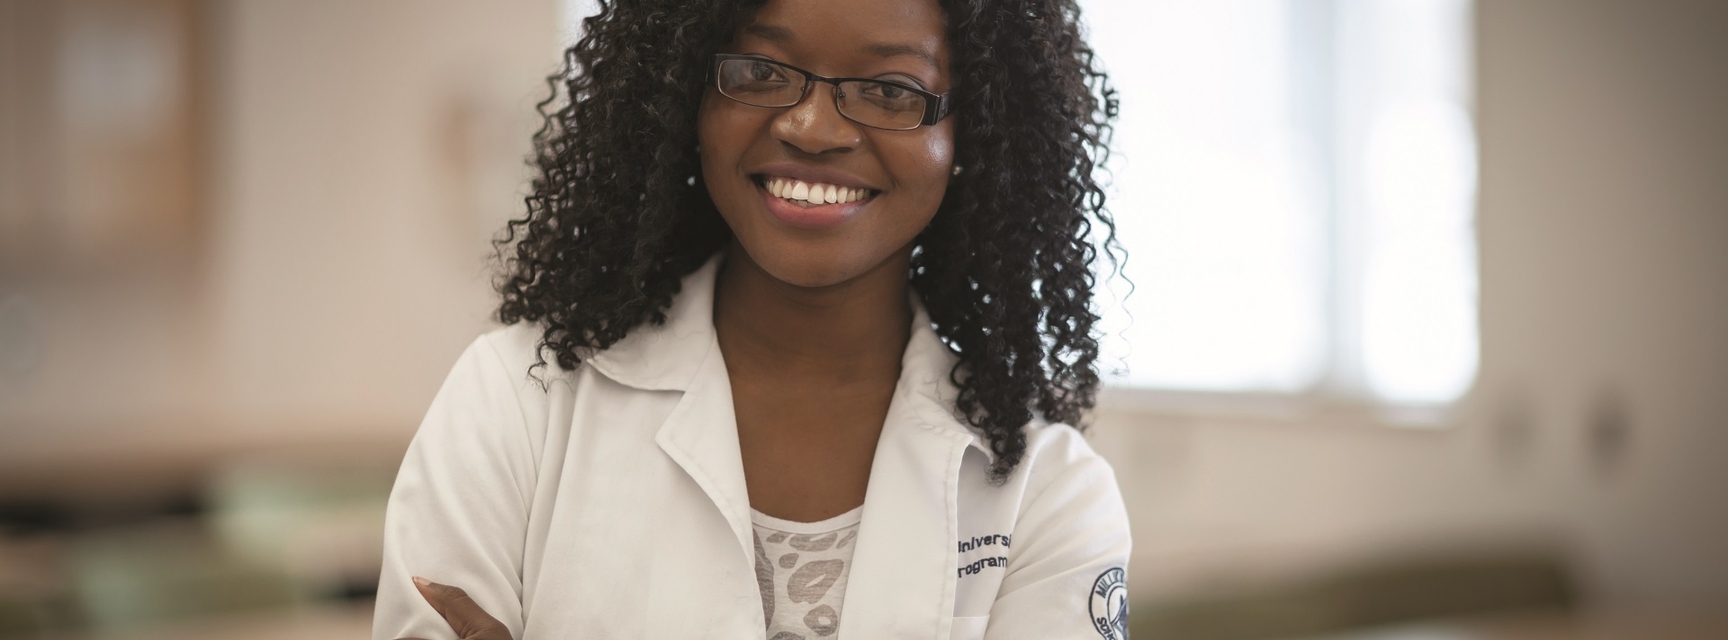 student in lab coat smiling